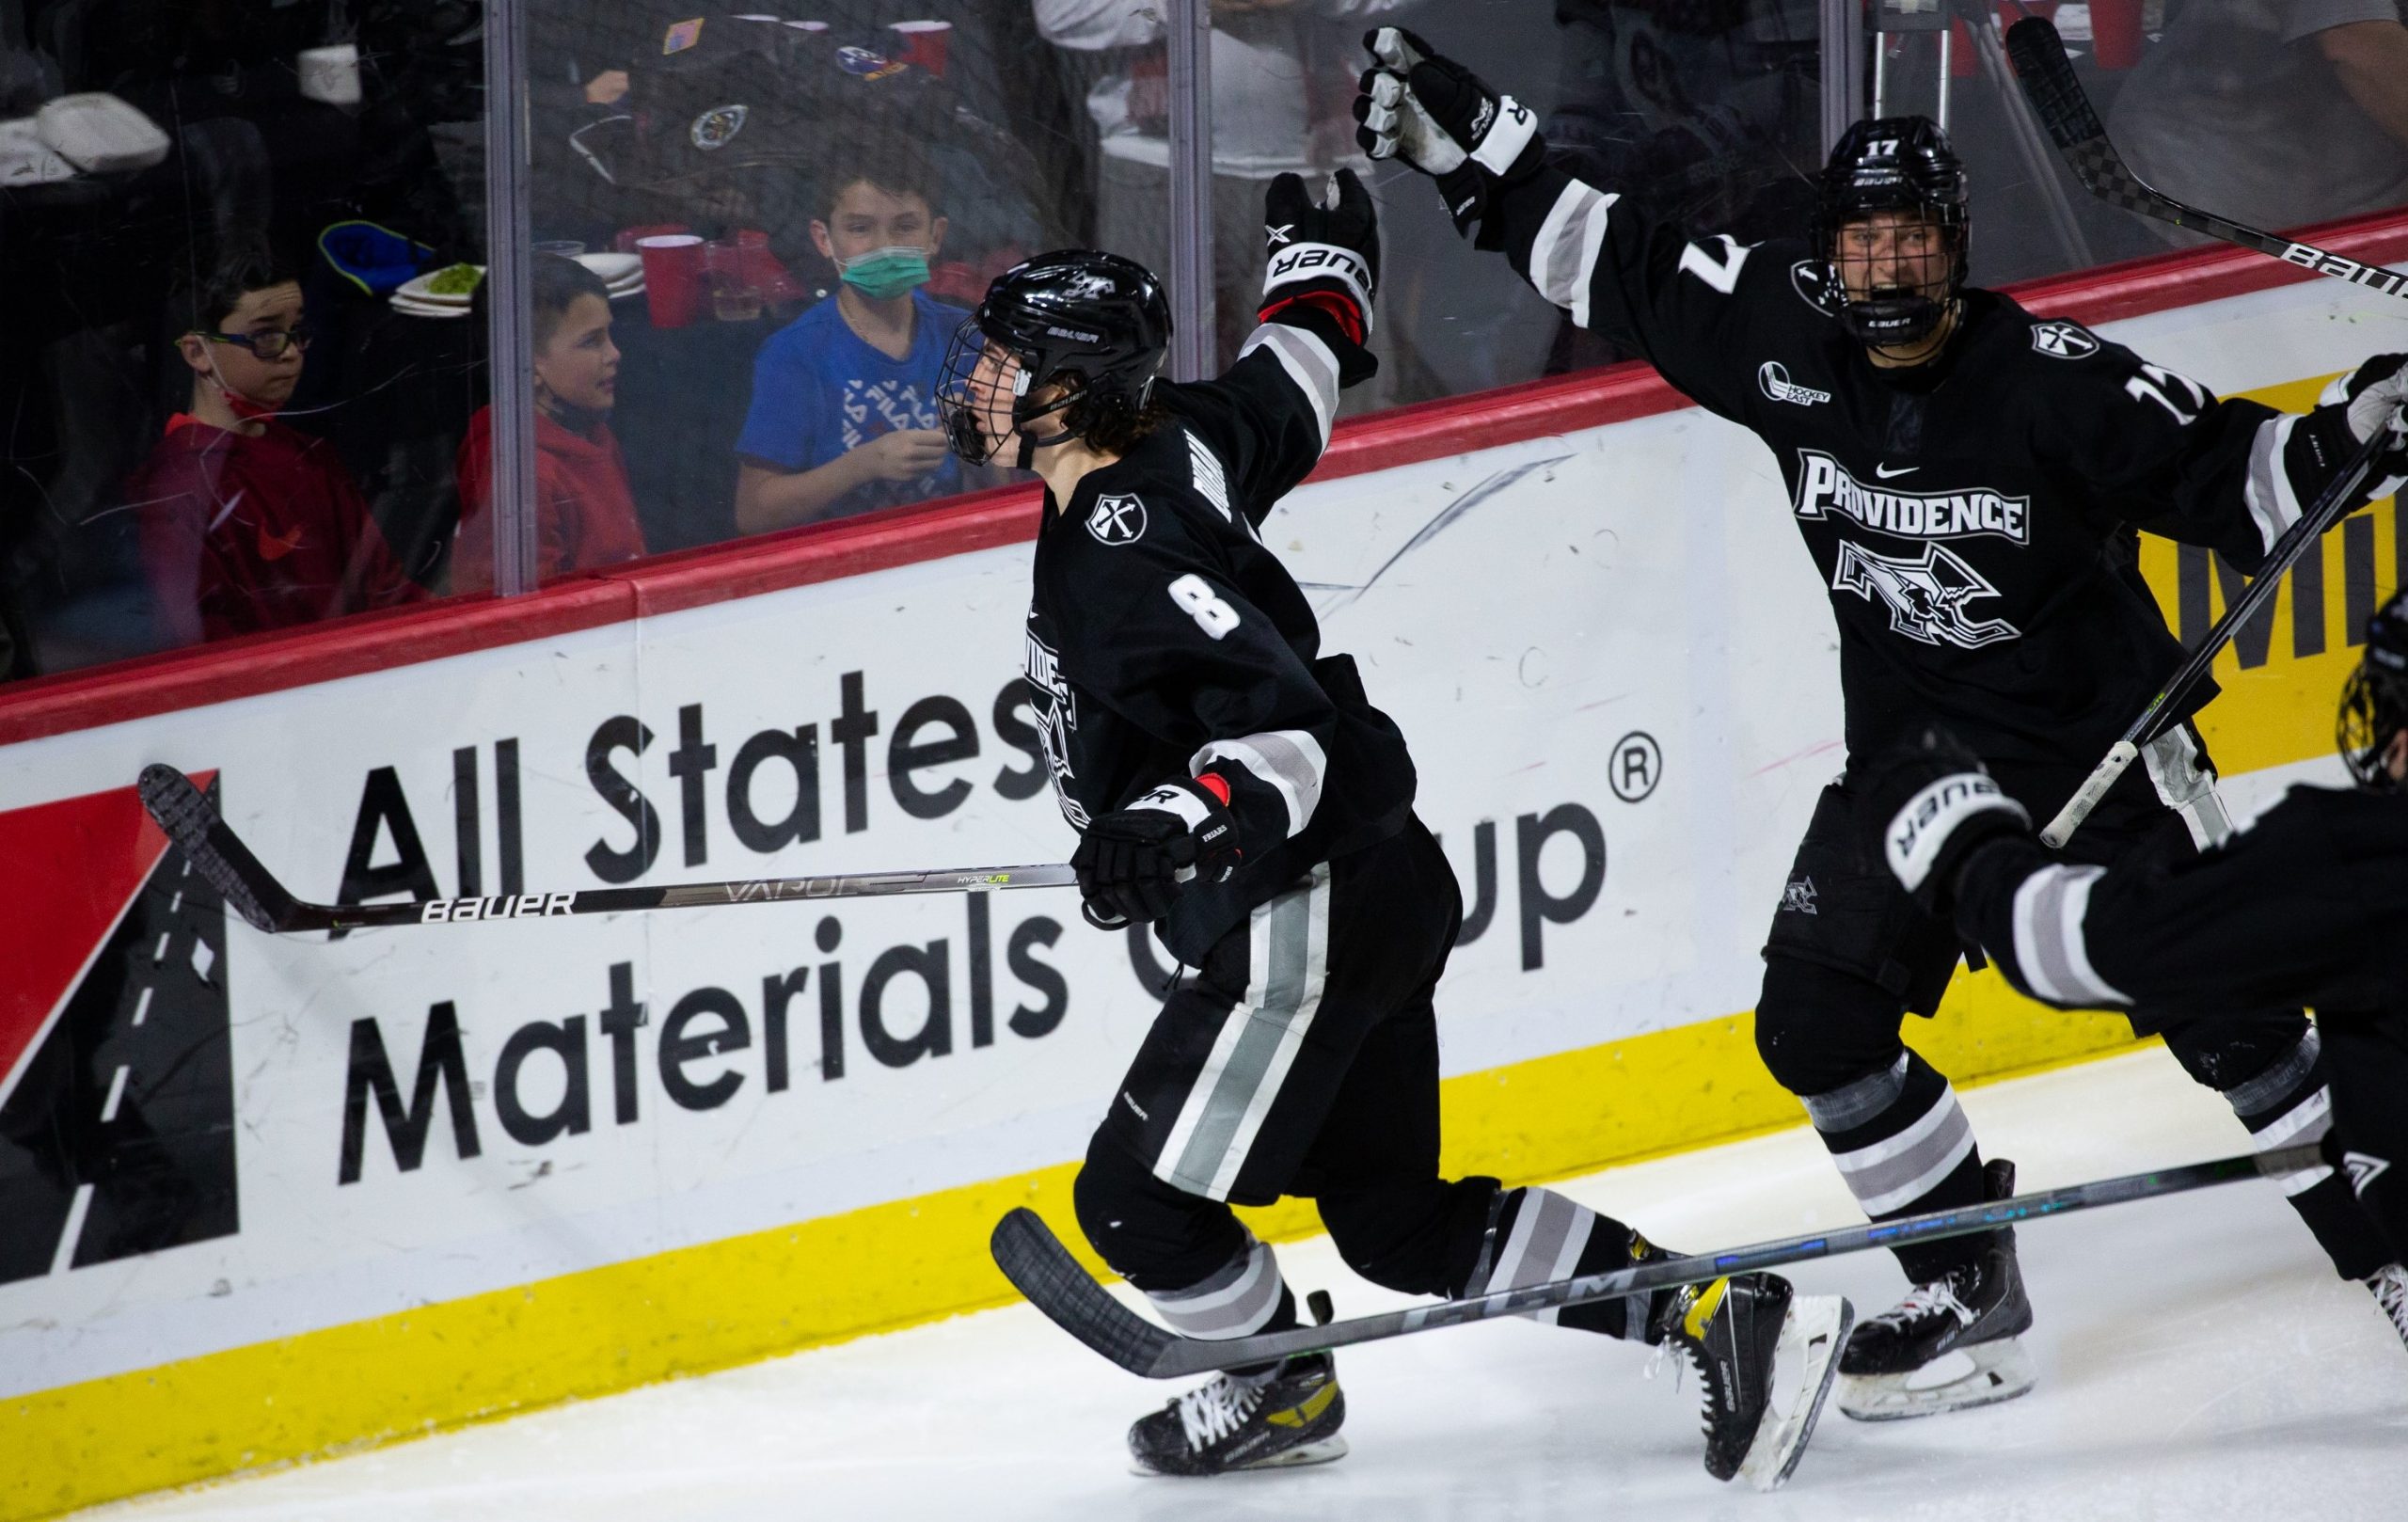 ASU Men's Hockey: Sun Devils lose to Wisconsin 6-2, ends regular season